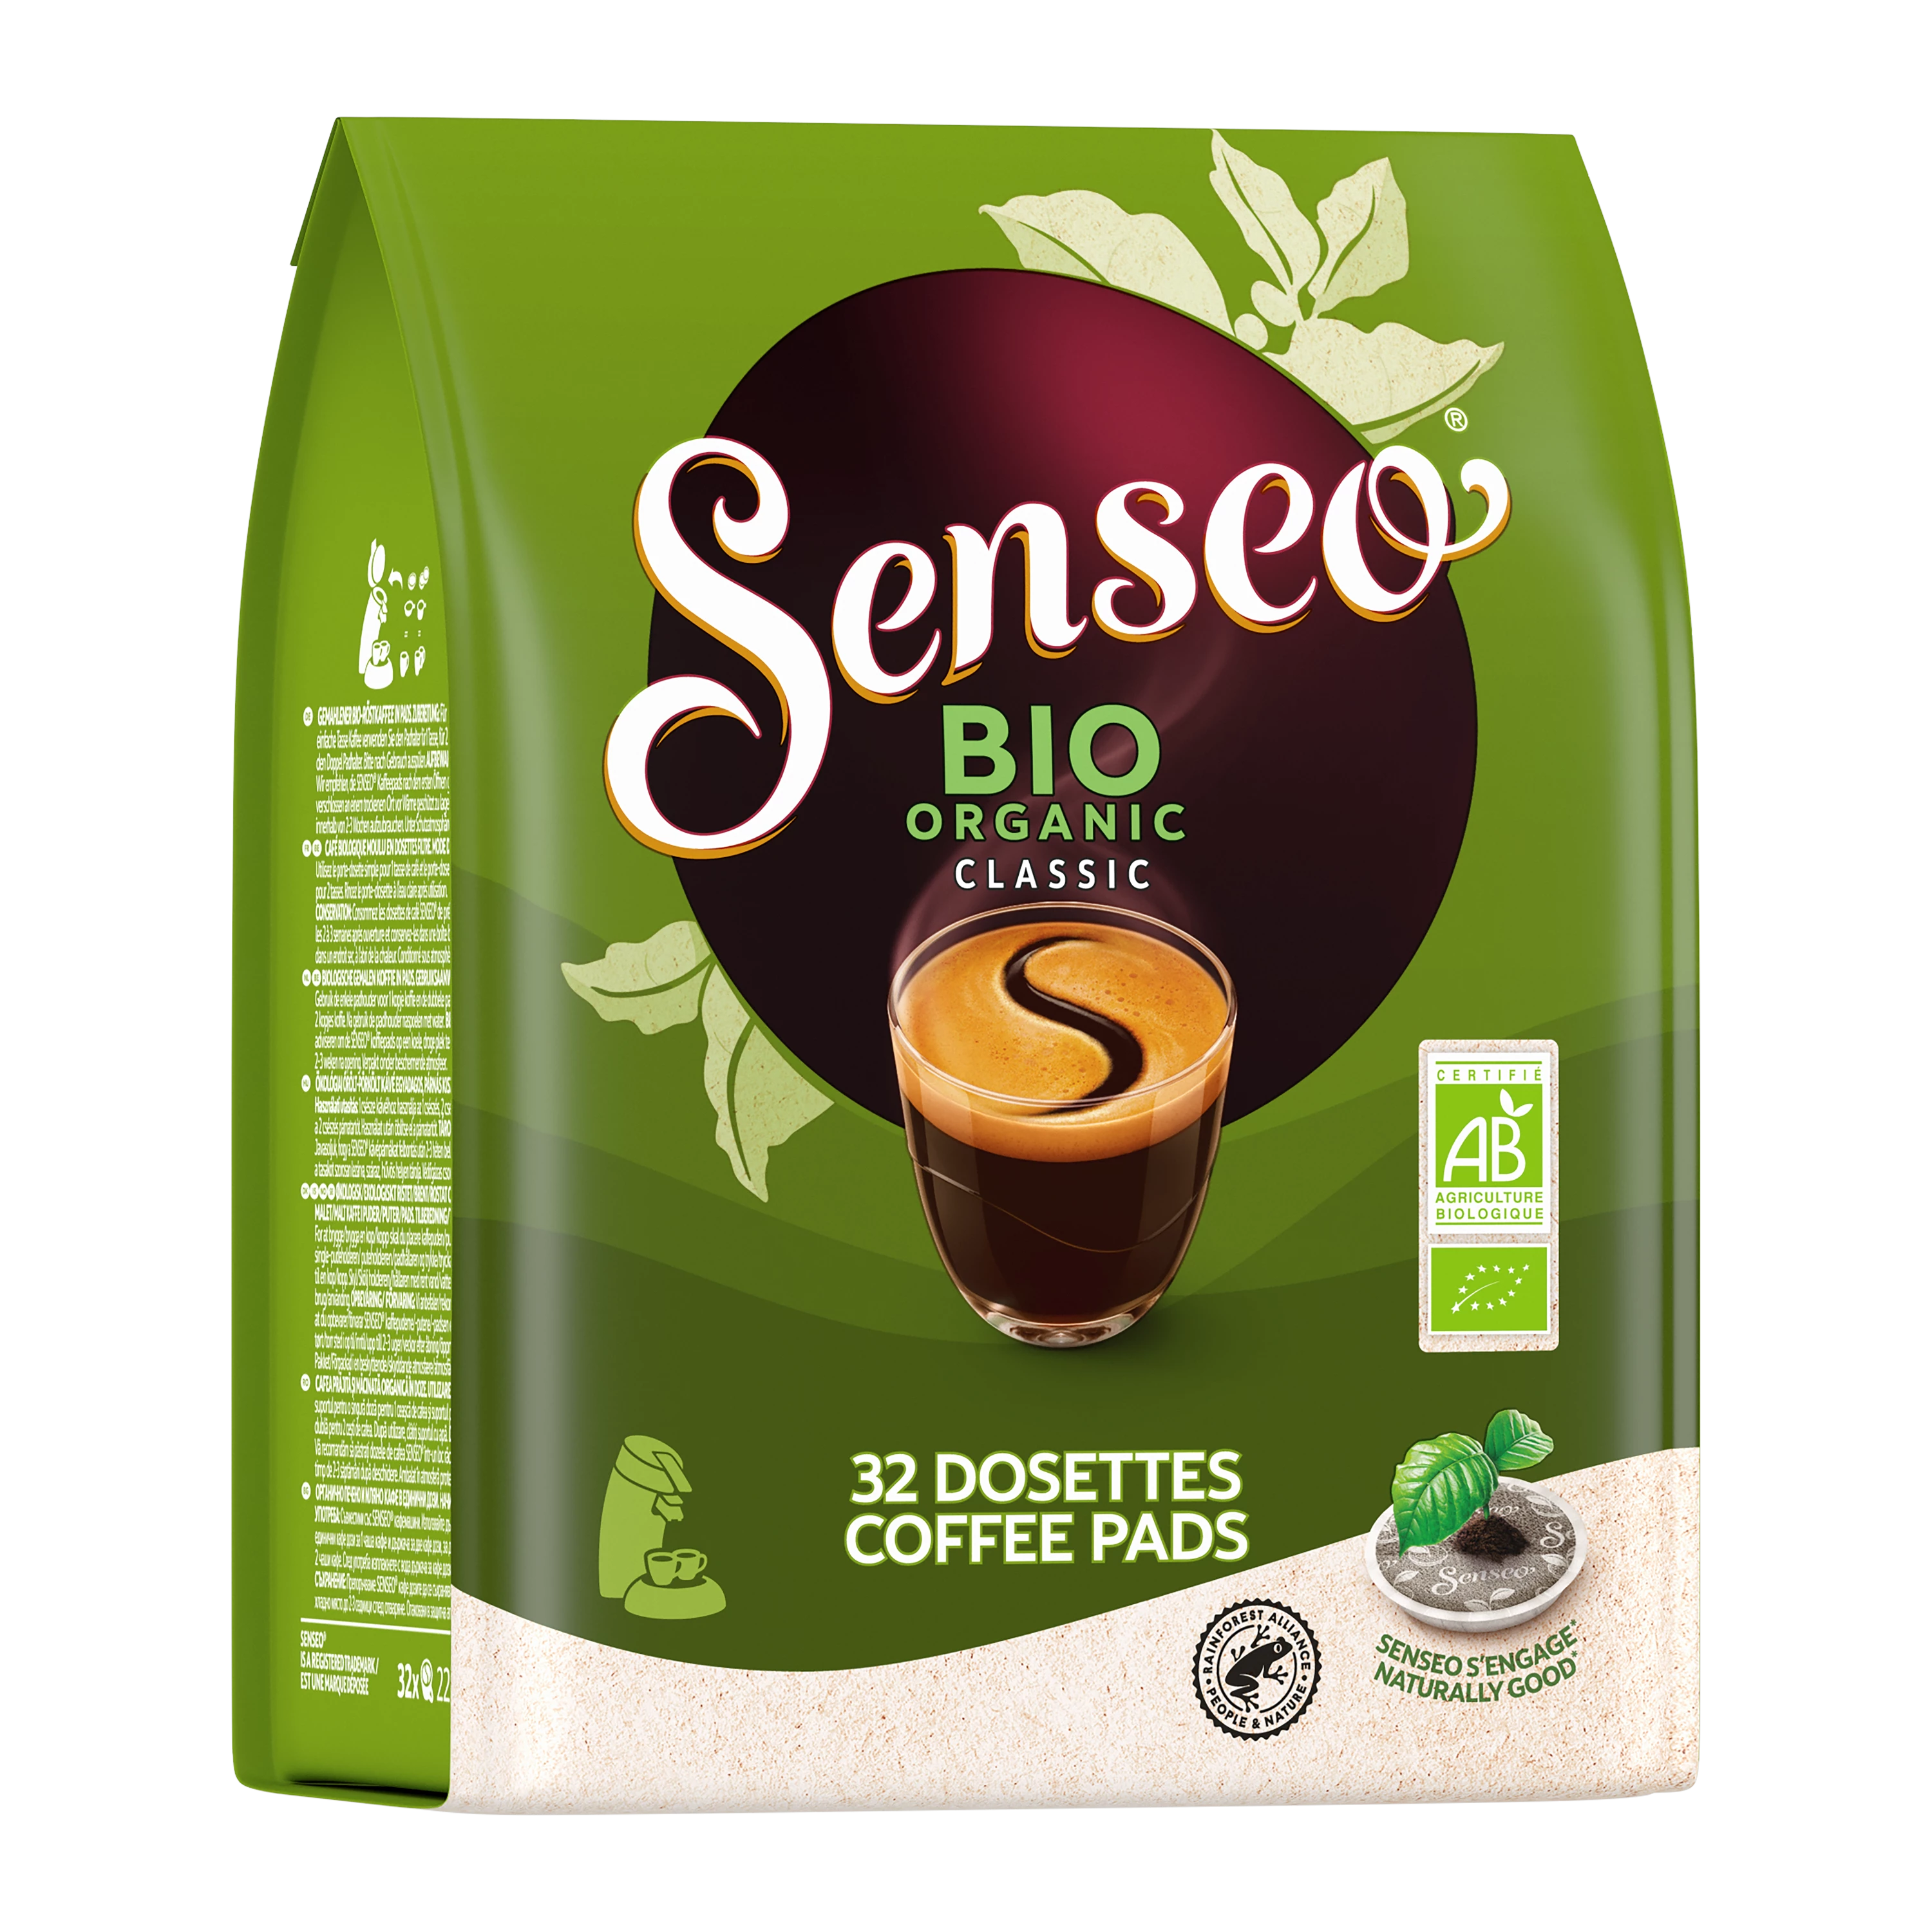 Café senseo caramel - 32 dosettes / 222g